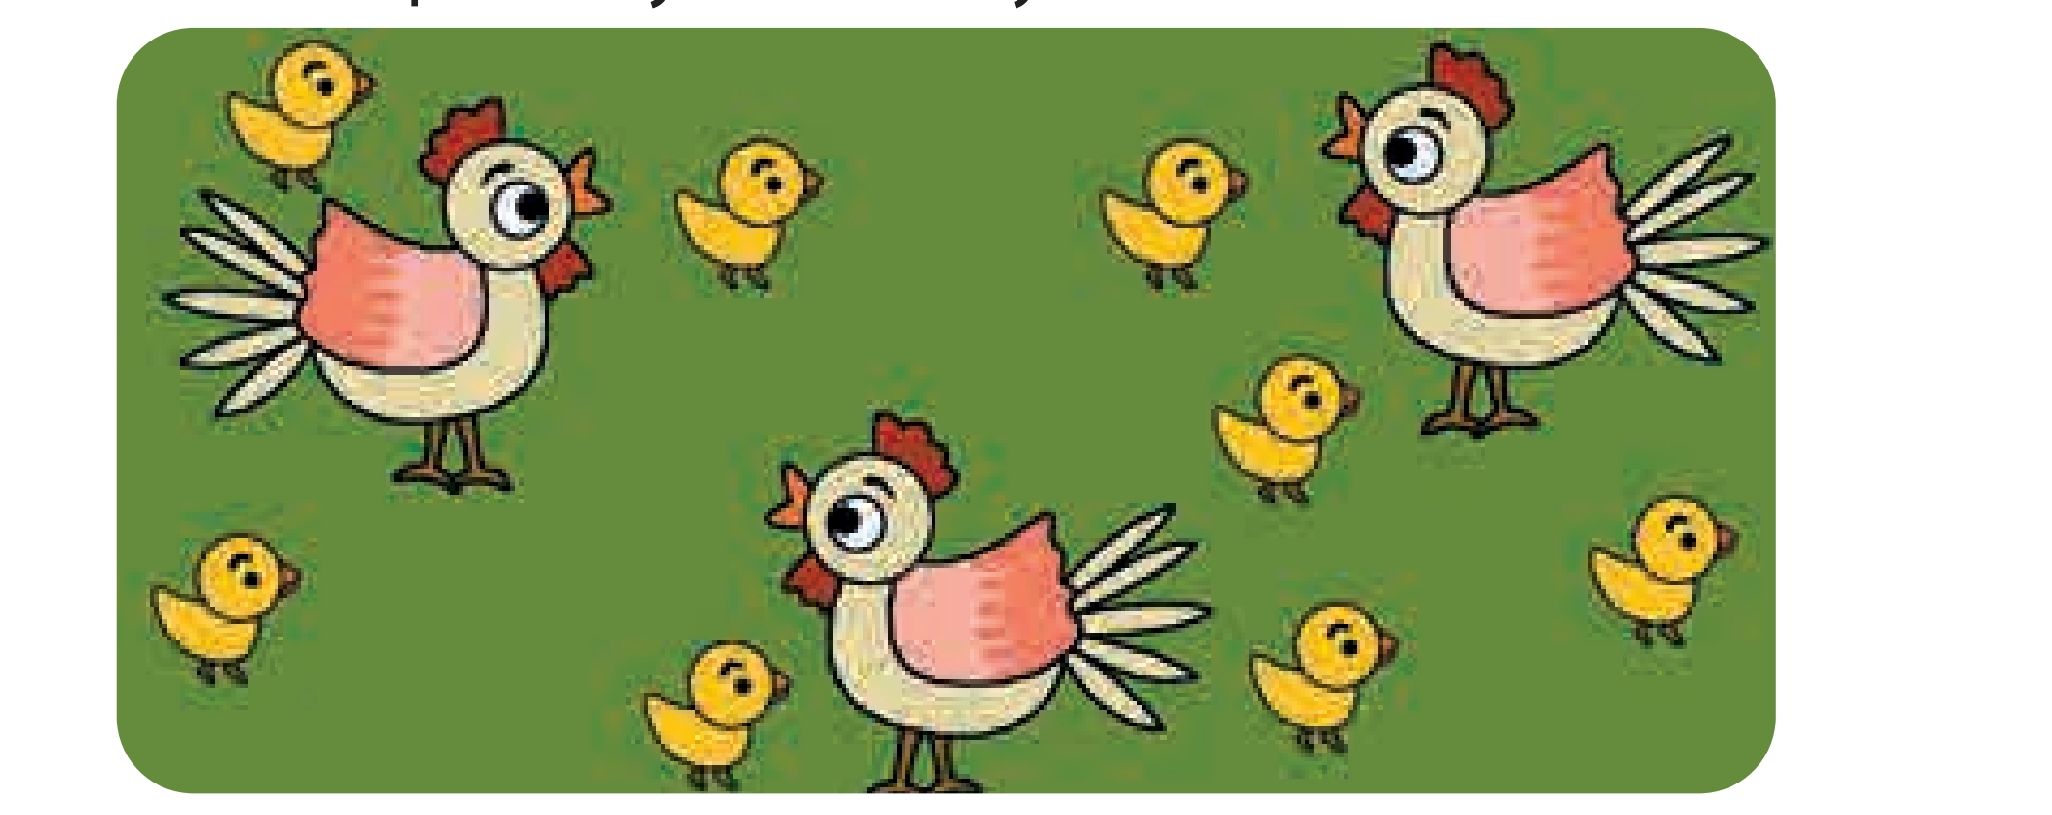 Gambar 1. berapakah jumlah anak ayam?Tangkap layar buku Matematika kelas 1 Kurikulum Merdeka/Portal Pekalongan/Sri Setiyowati.